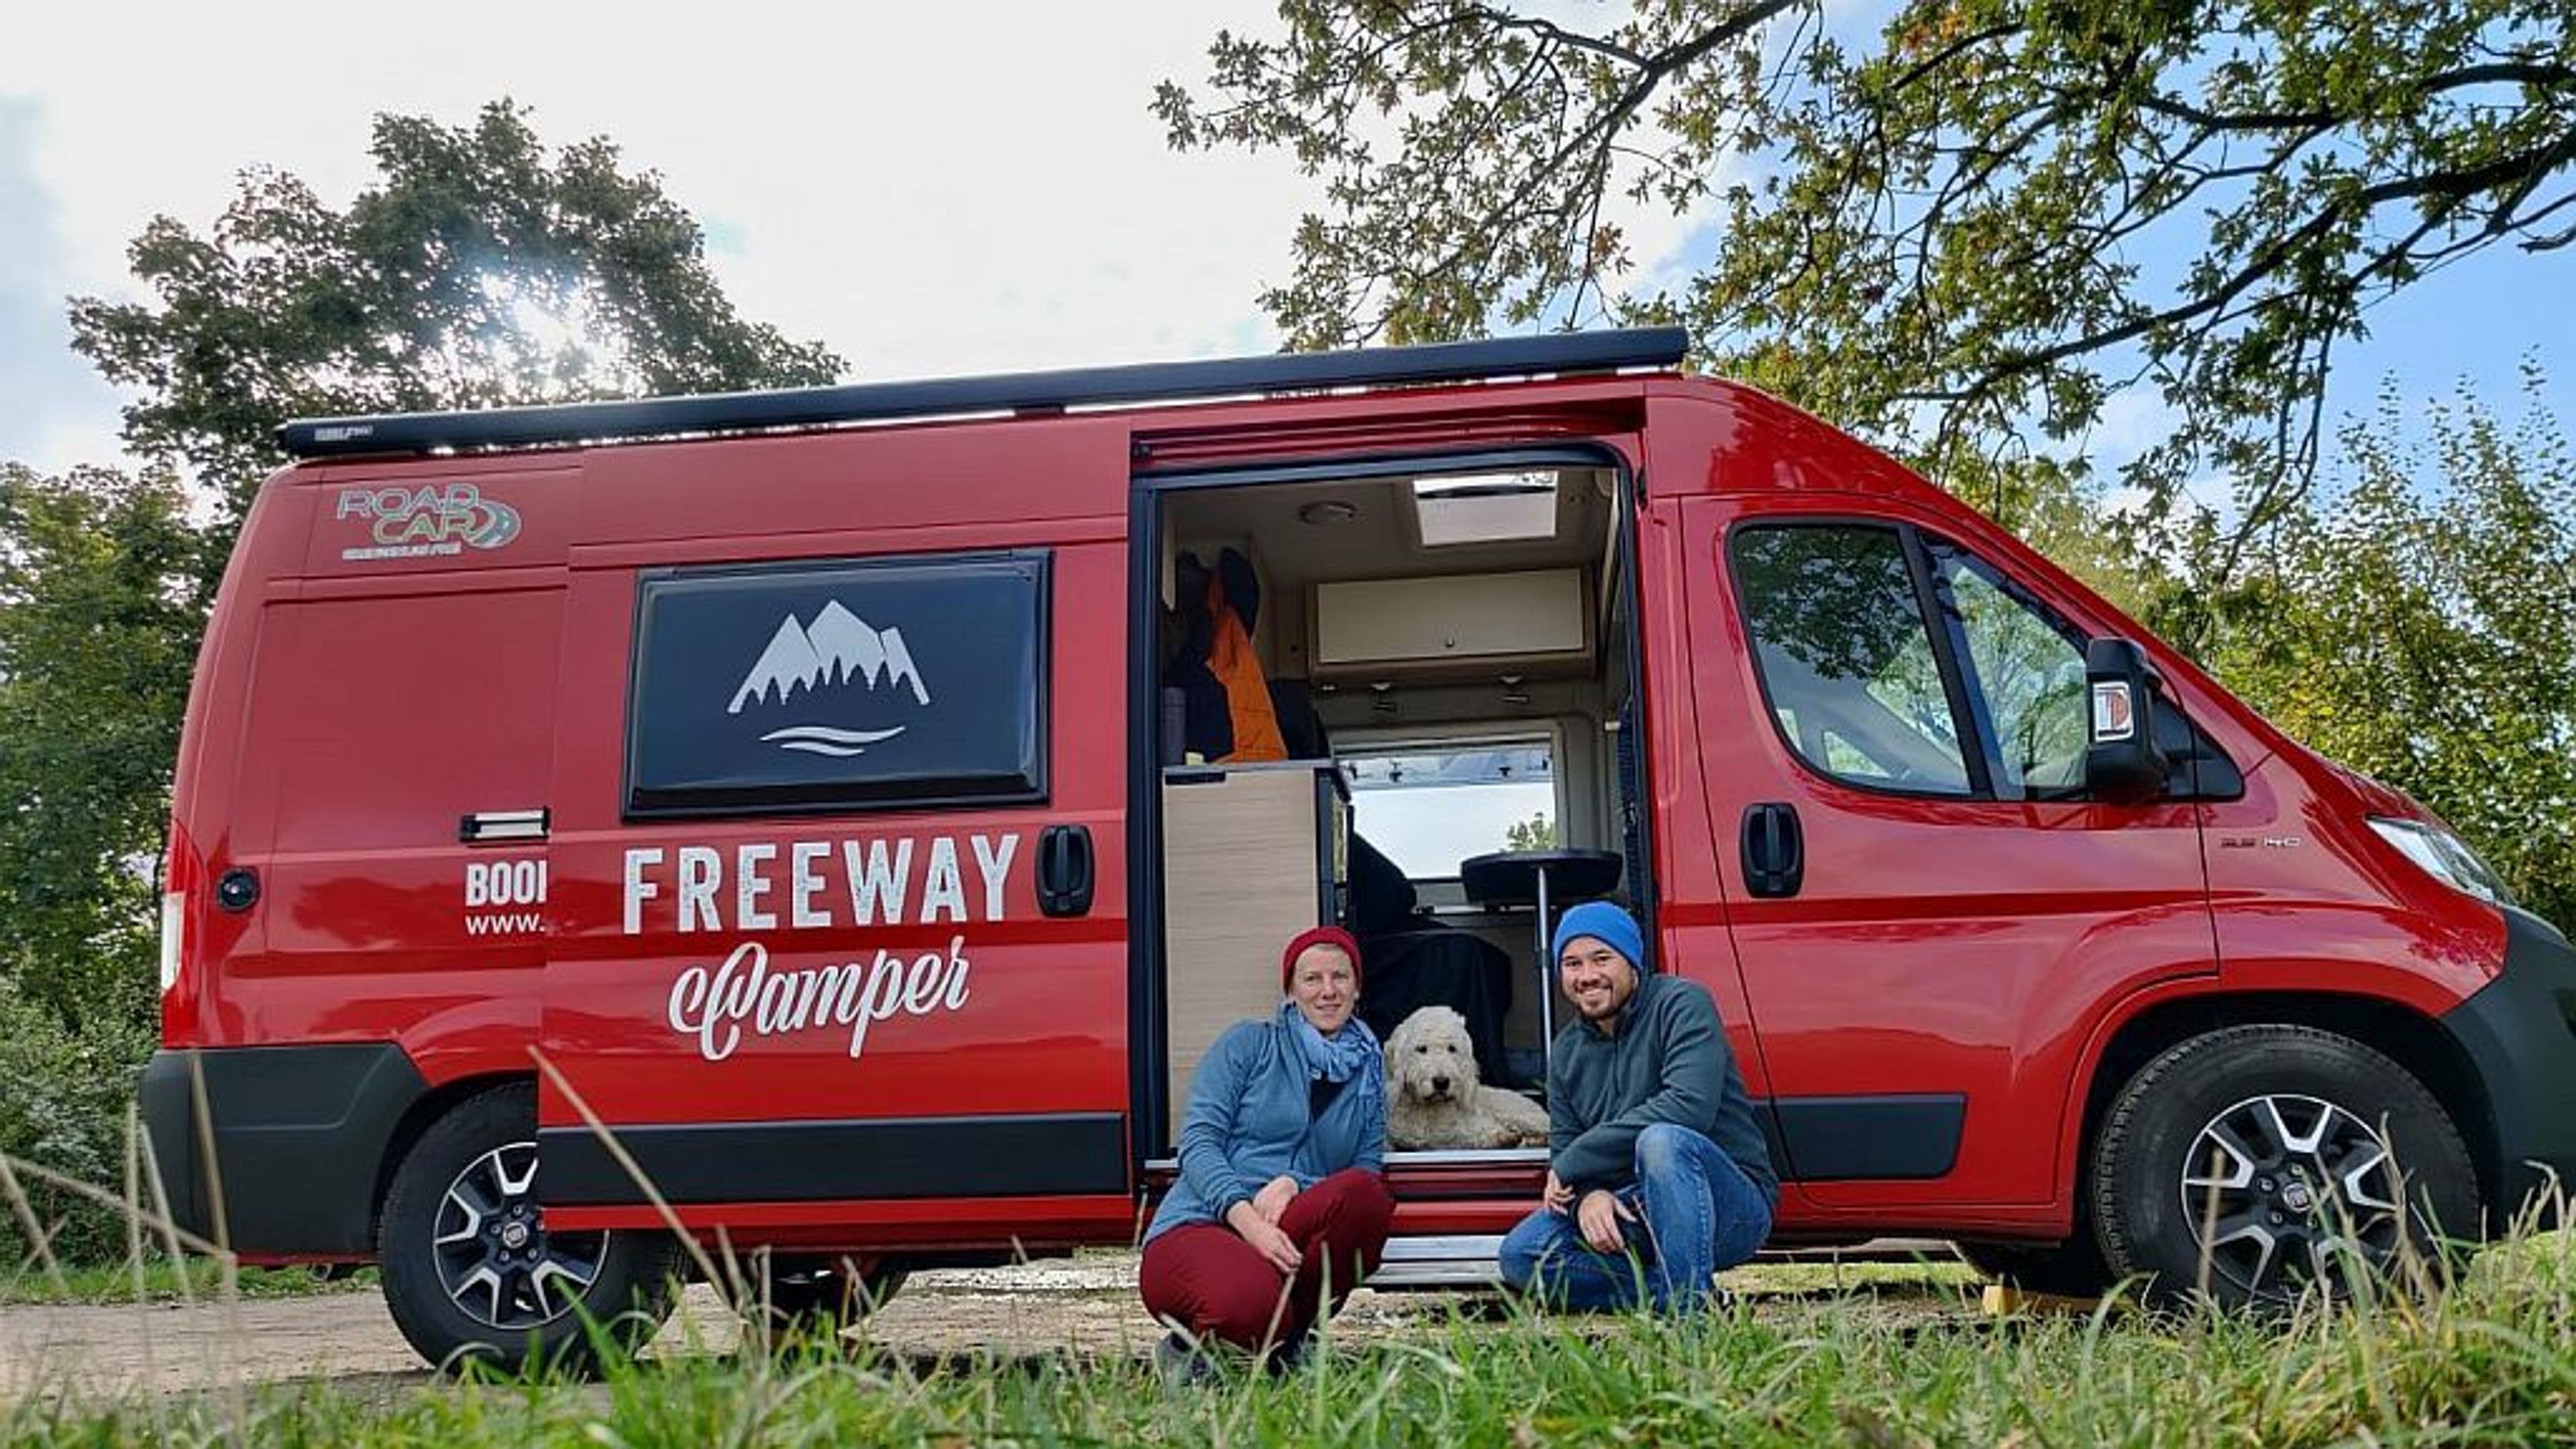 Camping mit Hund in einem Pössl Roadcar von FreewayCamper